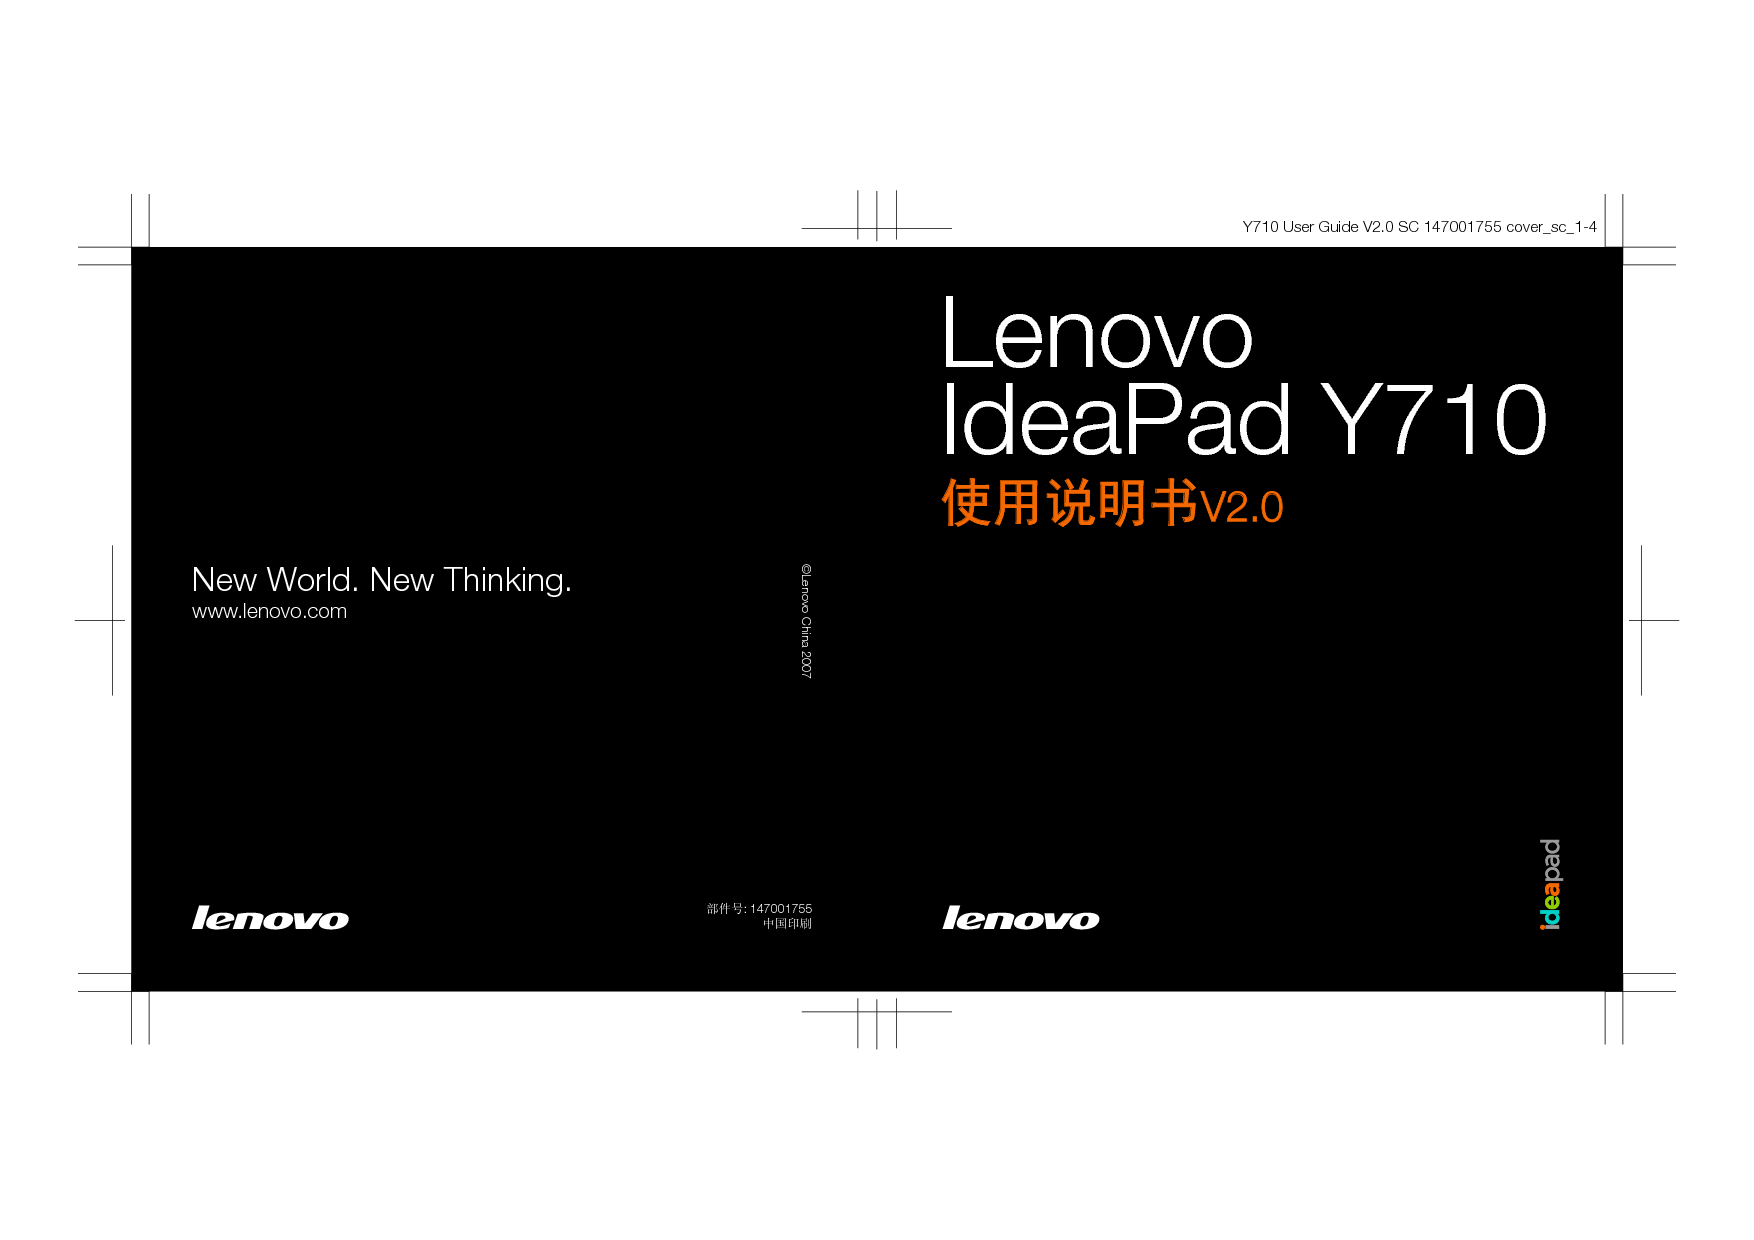 联想 Lenovo IdeaPad Y710 使用说明书 封面